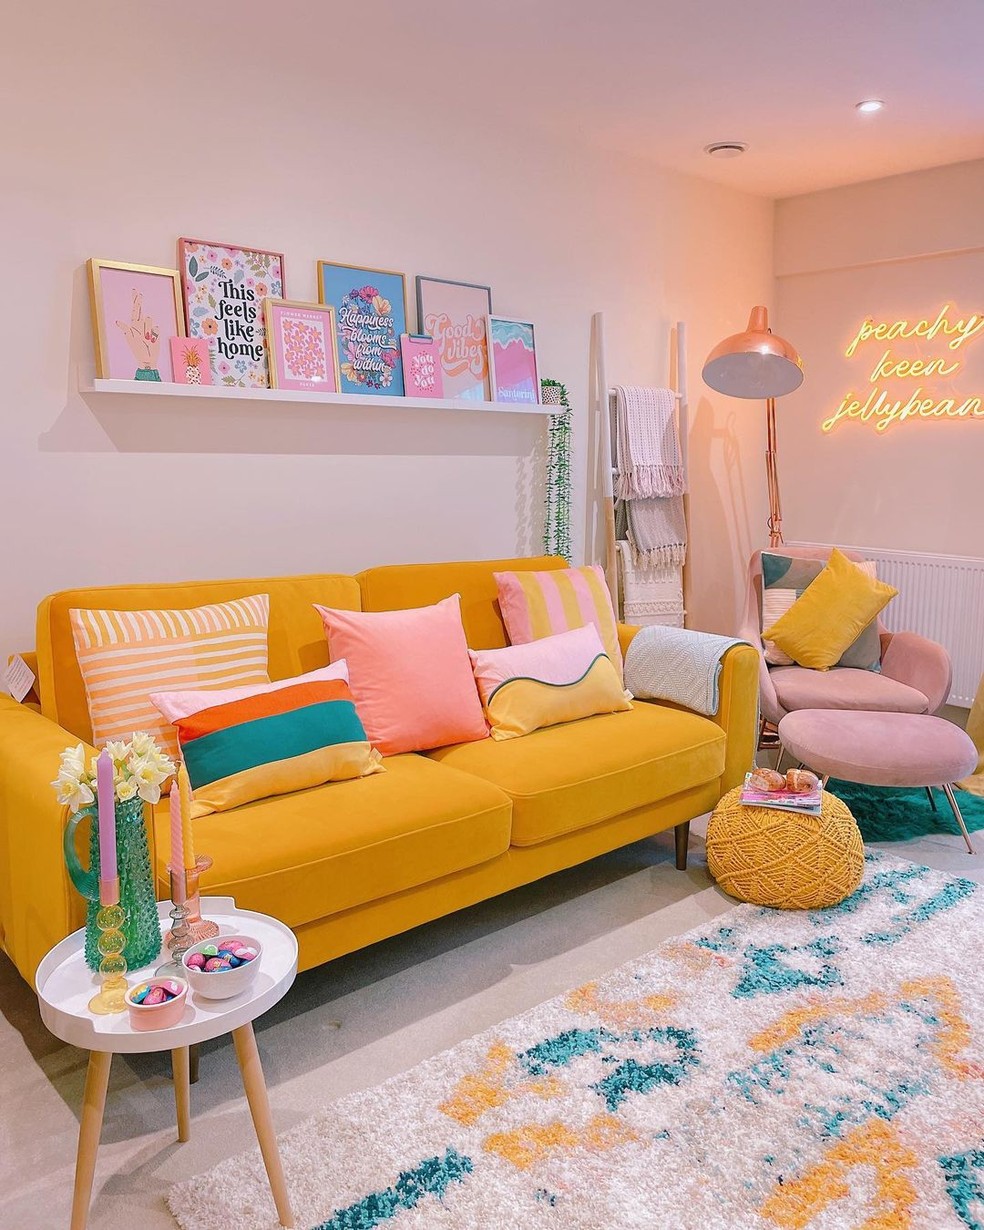 A jovem transformou um apartamento neutro em um paraíso colorido — Foto: Instagram / @the_flat_that_rosie_built / Reprodução